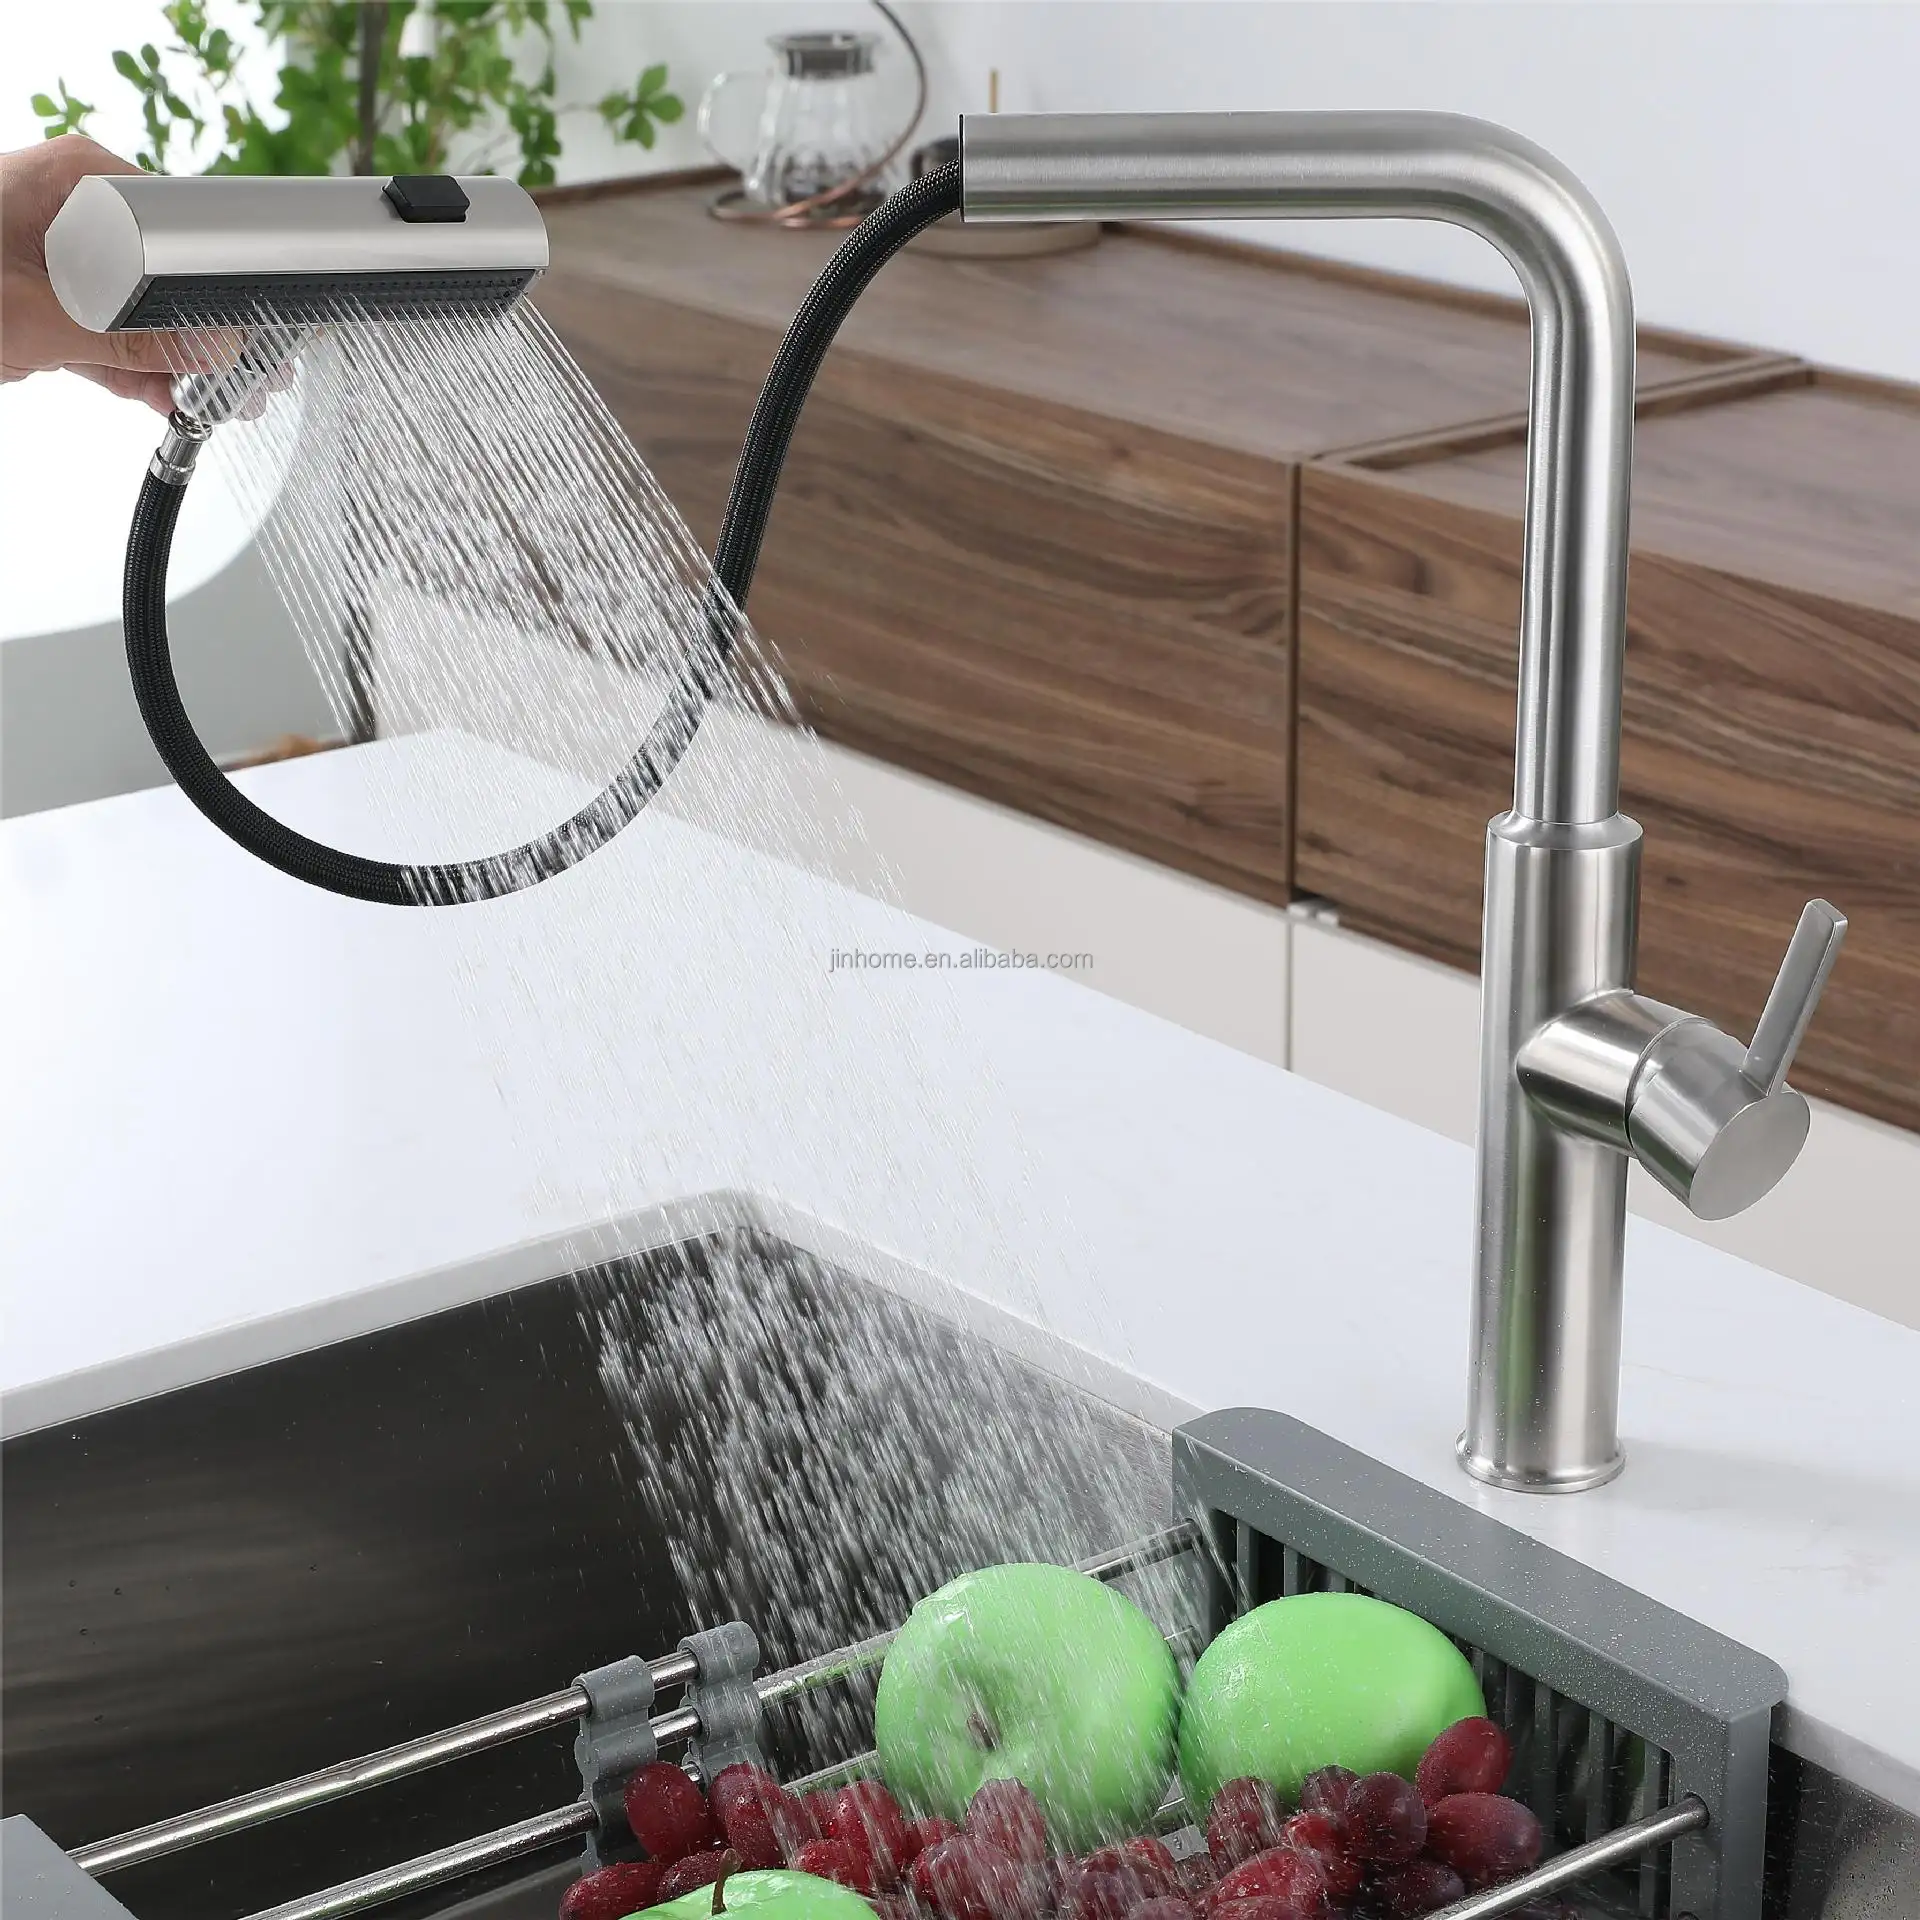 Lusso cascata estraibile rubinetto cucina 304 acciaio inox lavello rubinetto 360 gradi di rotazione lavello miscelatore rubinetto